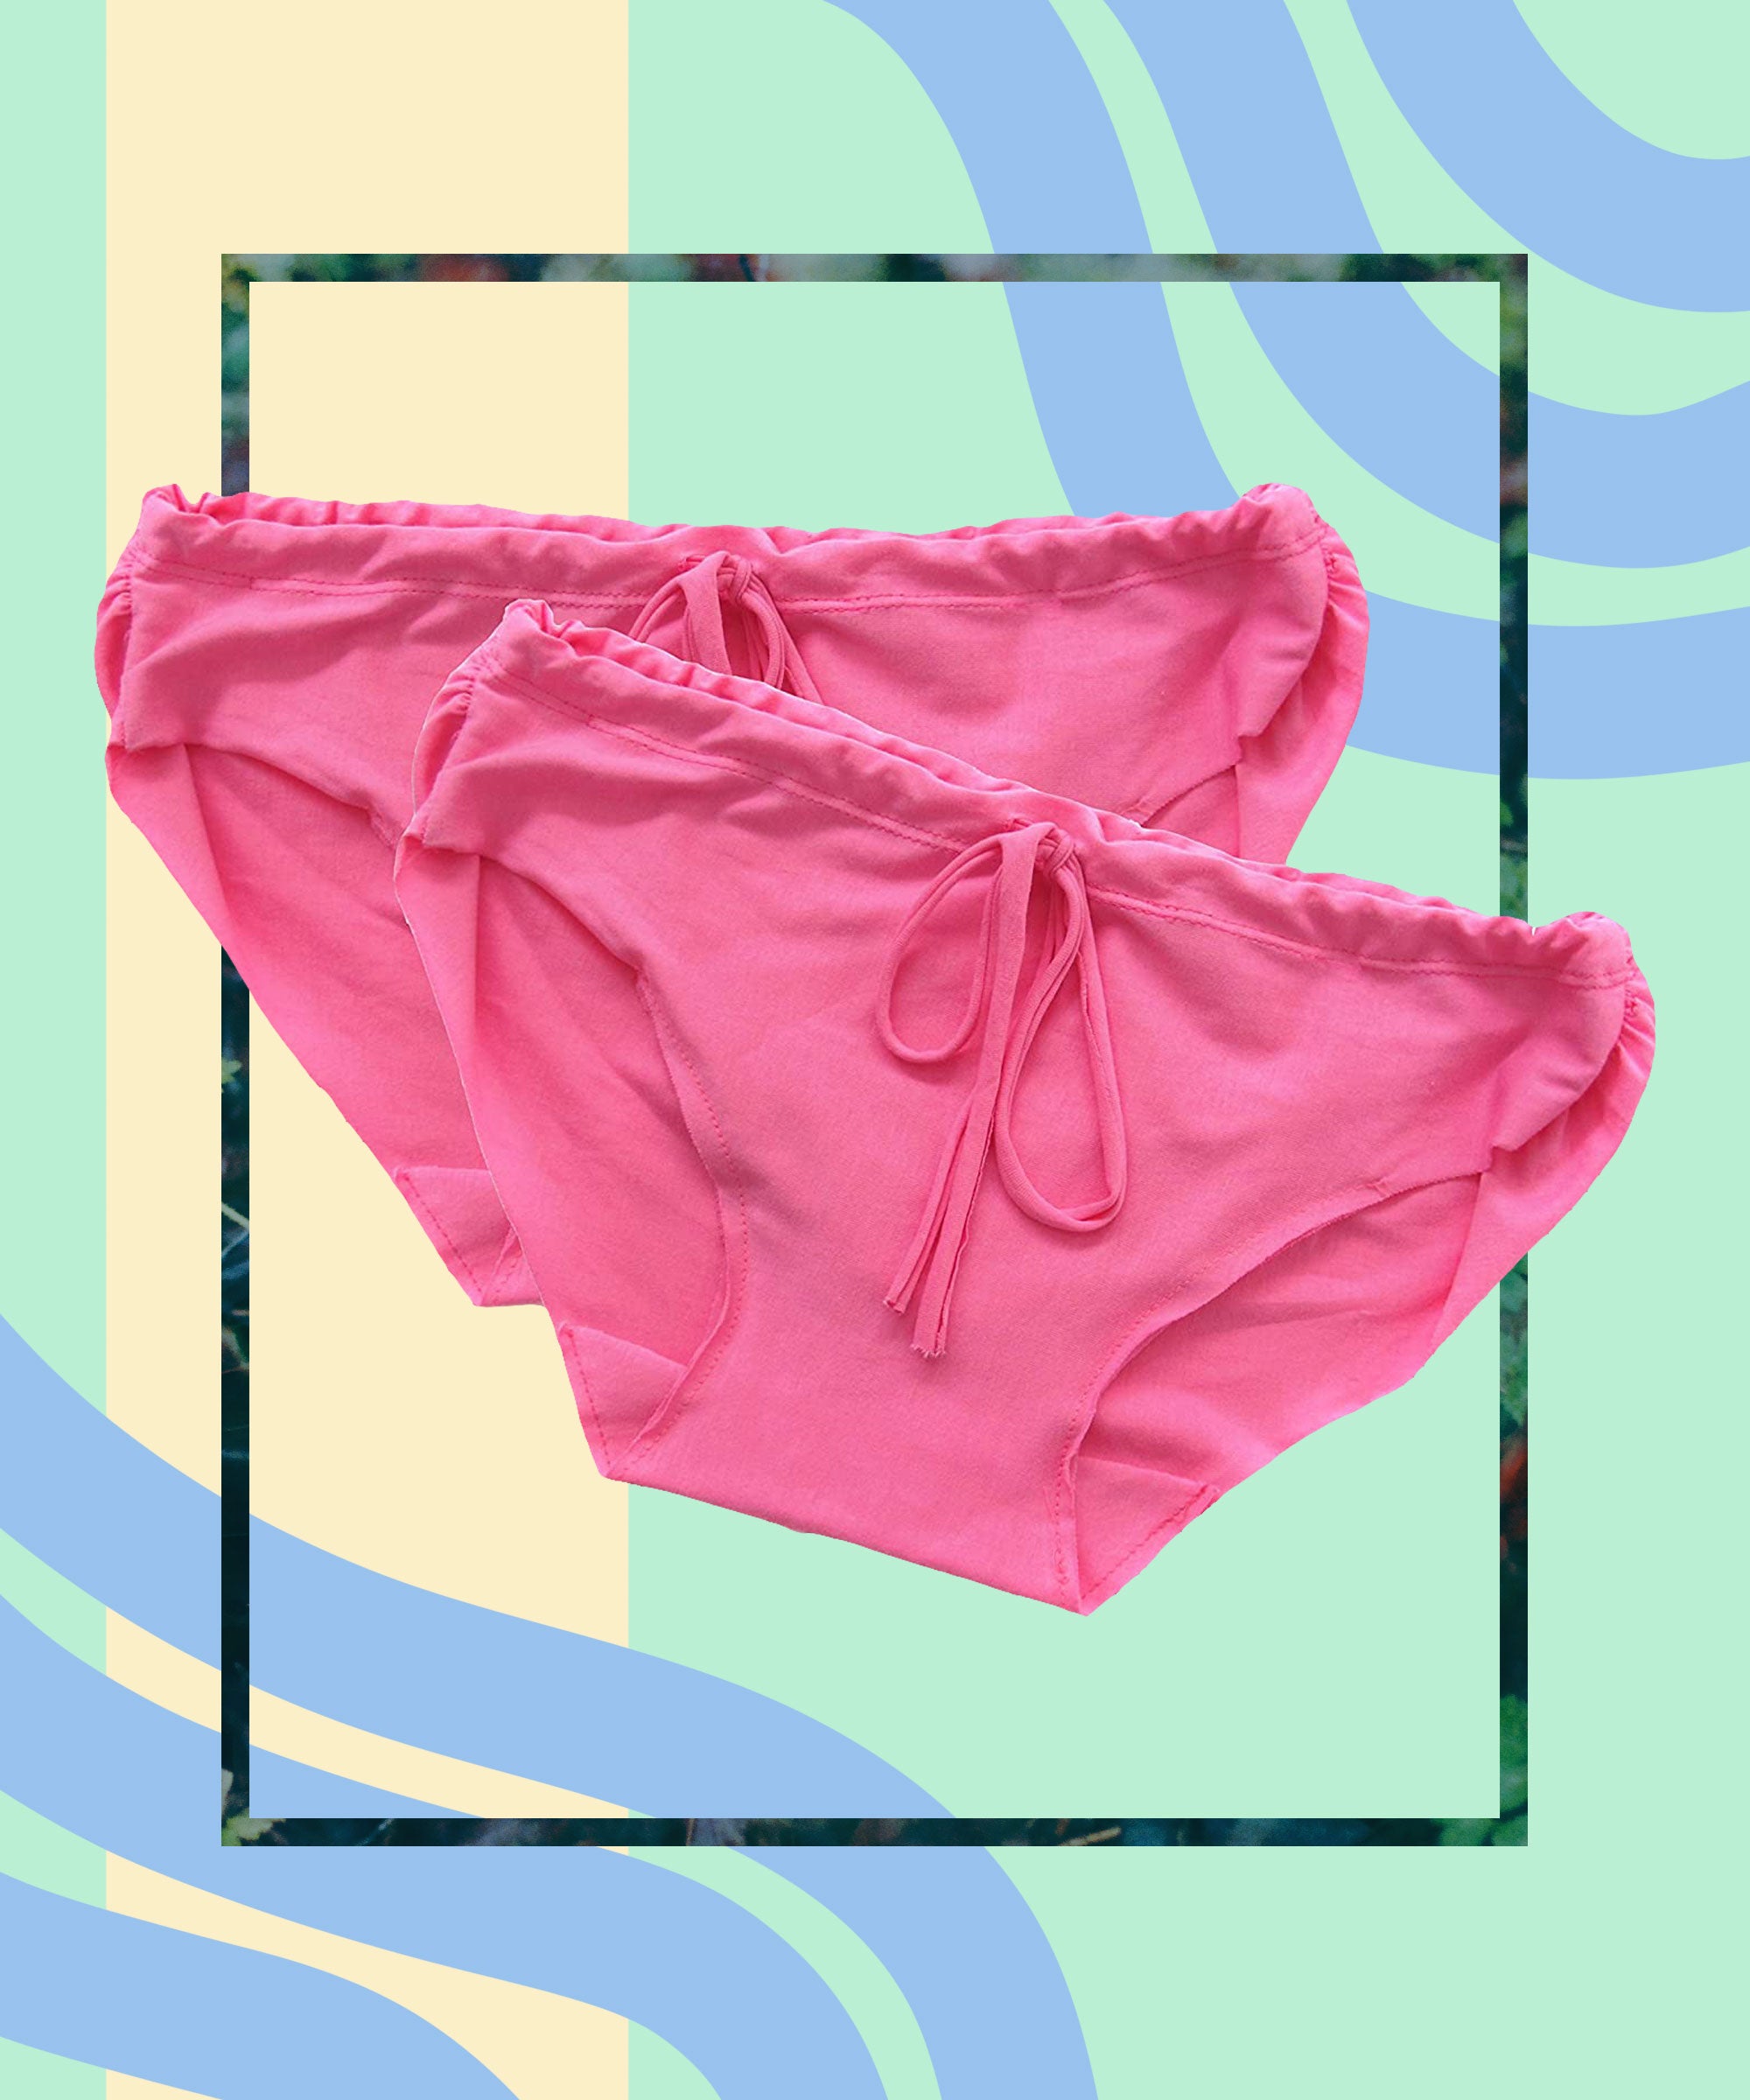 Best Postpartum Underwear Of 2020 - Inner Parents